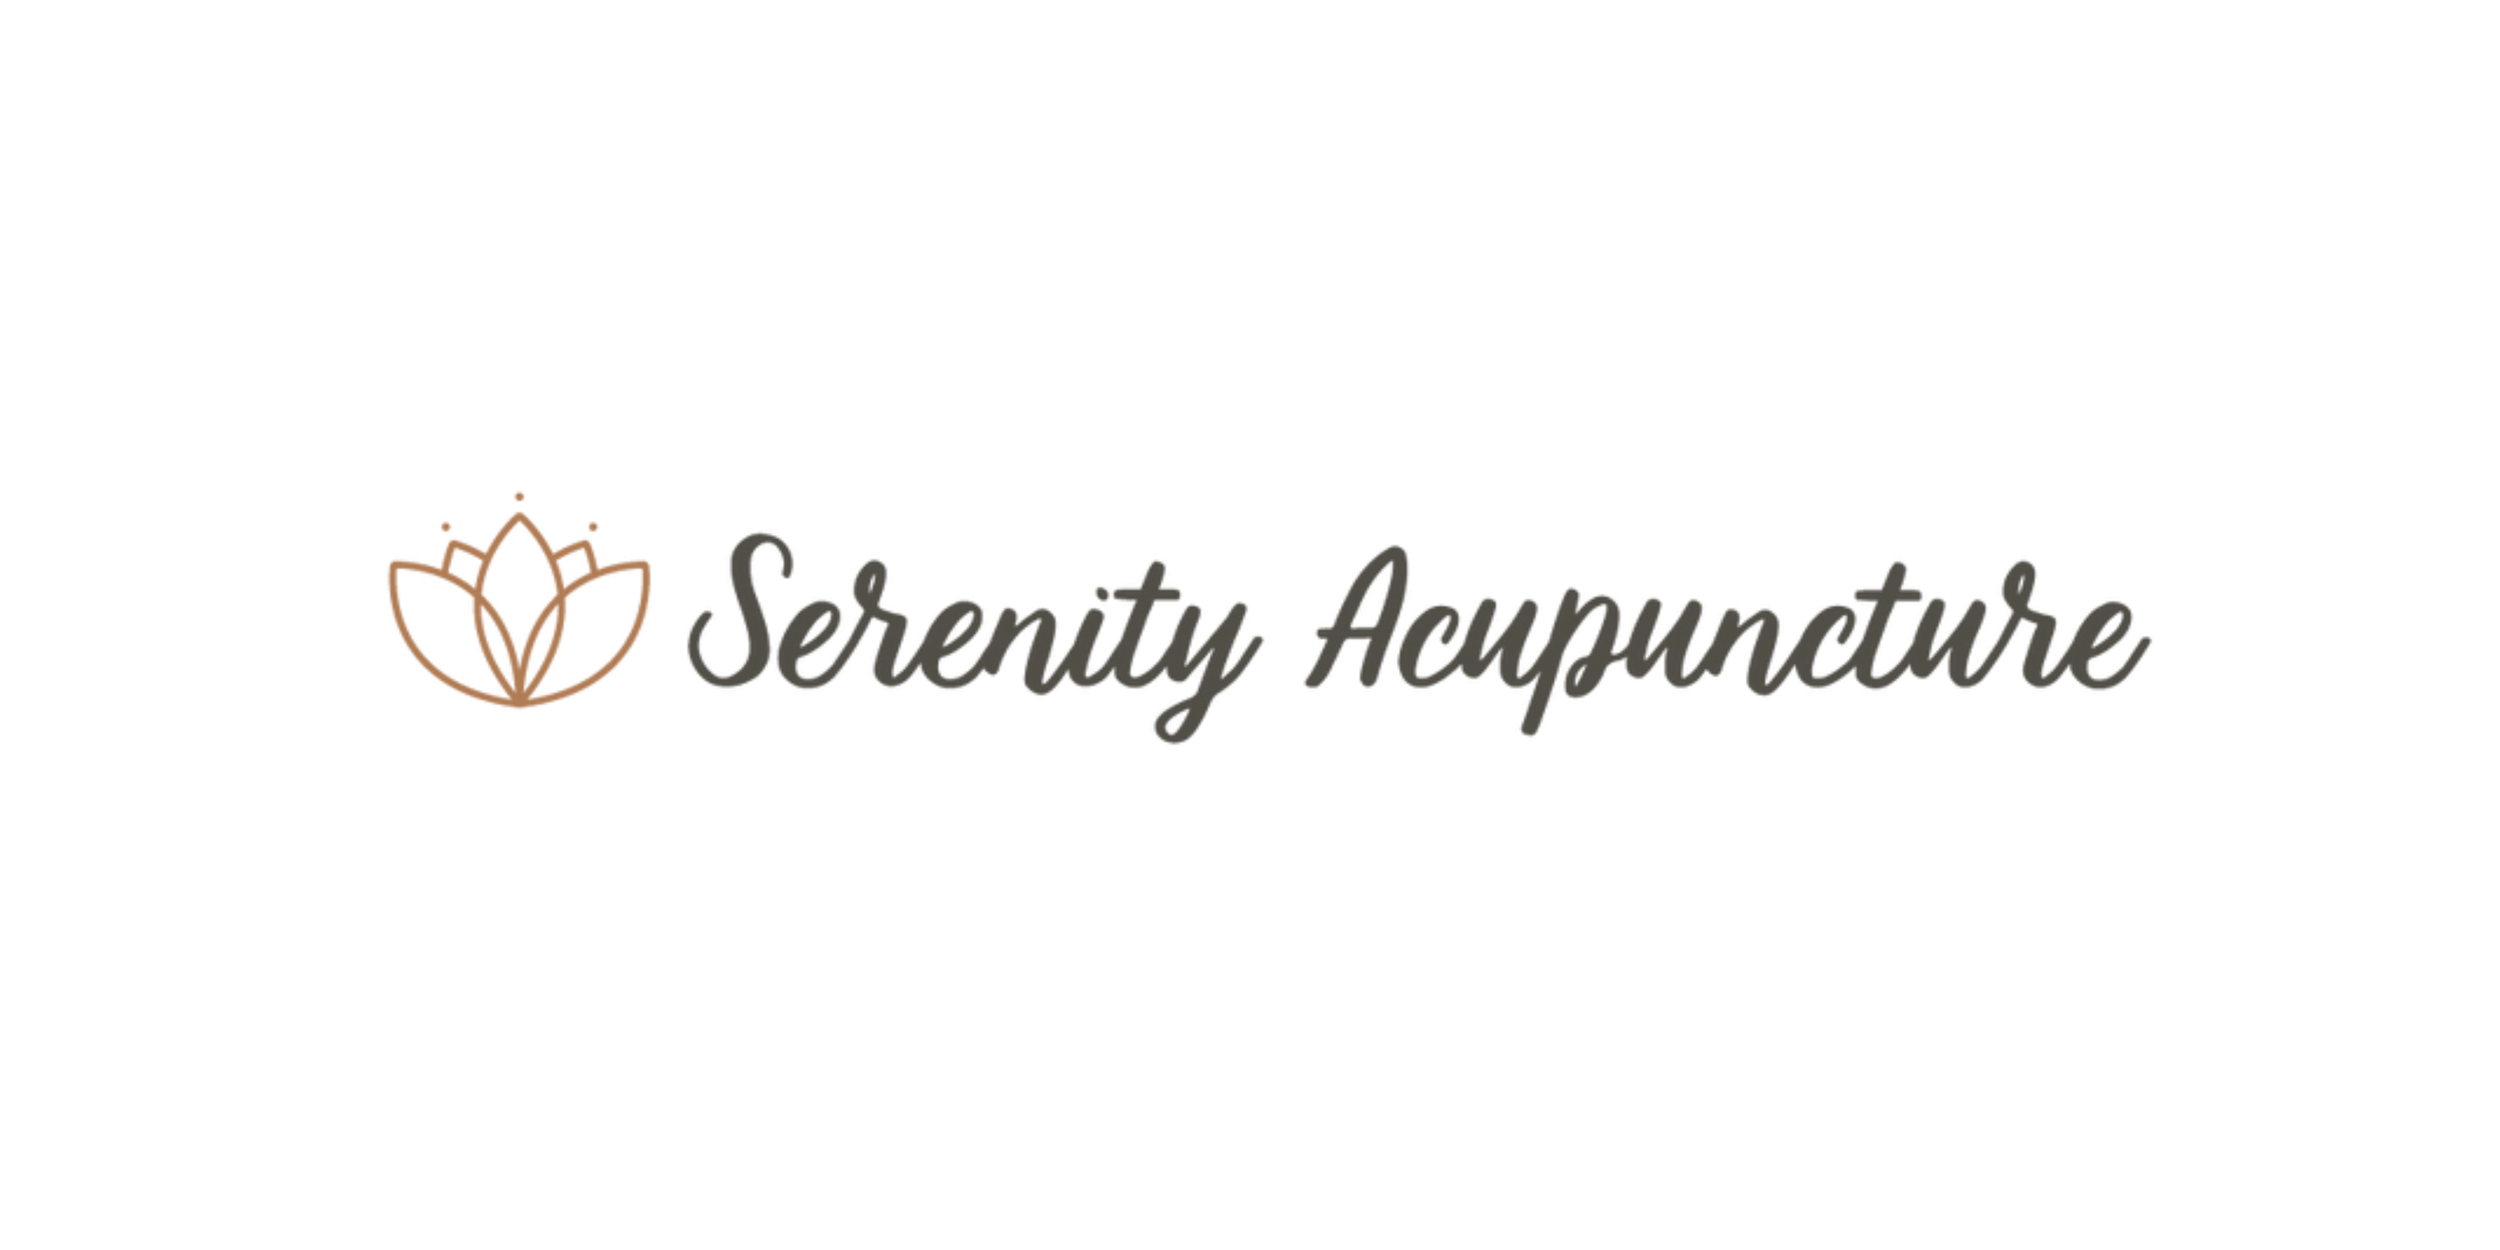 Serenity Acupuncture (Copy) (Copy) (Copy) (Copy) (Copy) (Copy) (Copy)